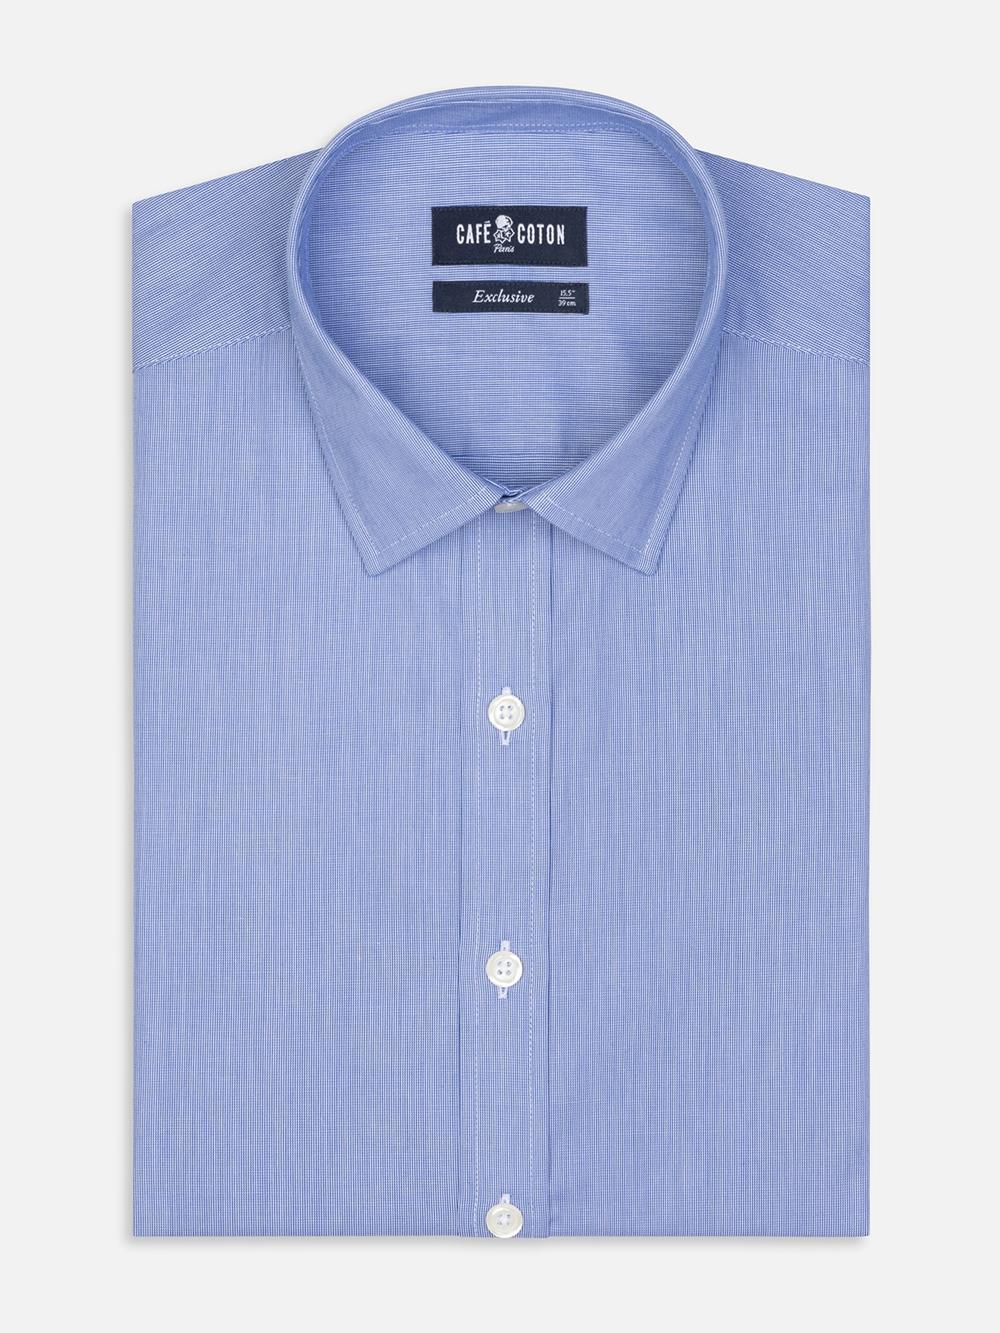 Tailliertes Hemd mit tausend Streifen blau - Kleiner Kragen